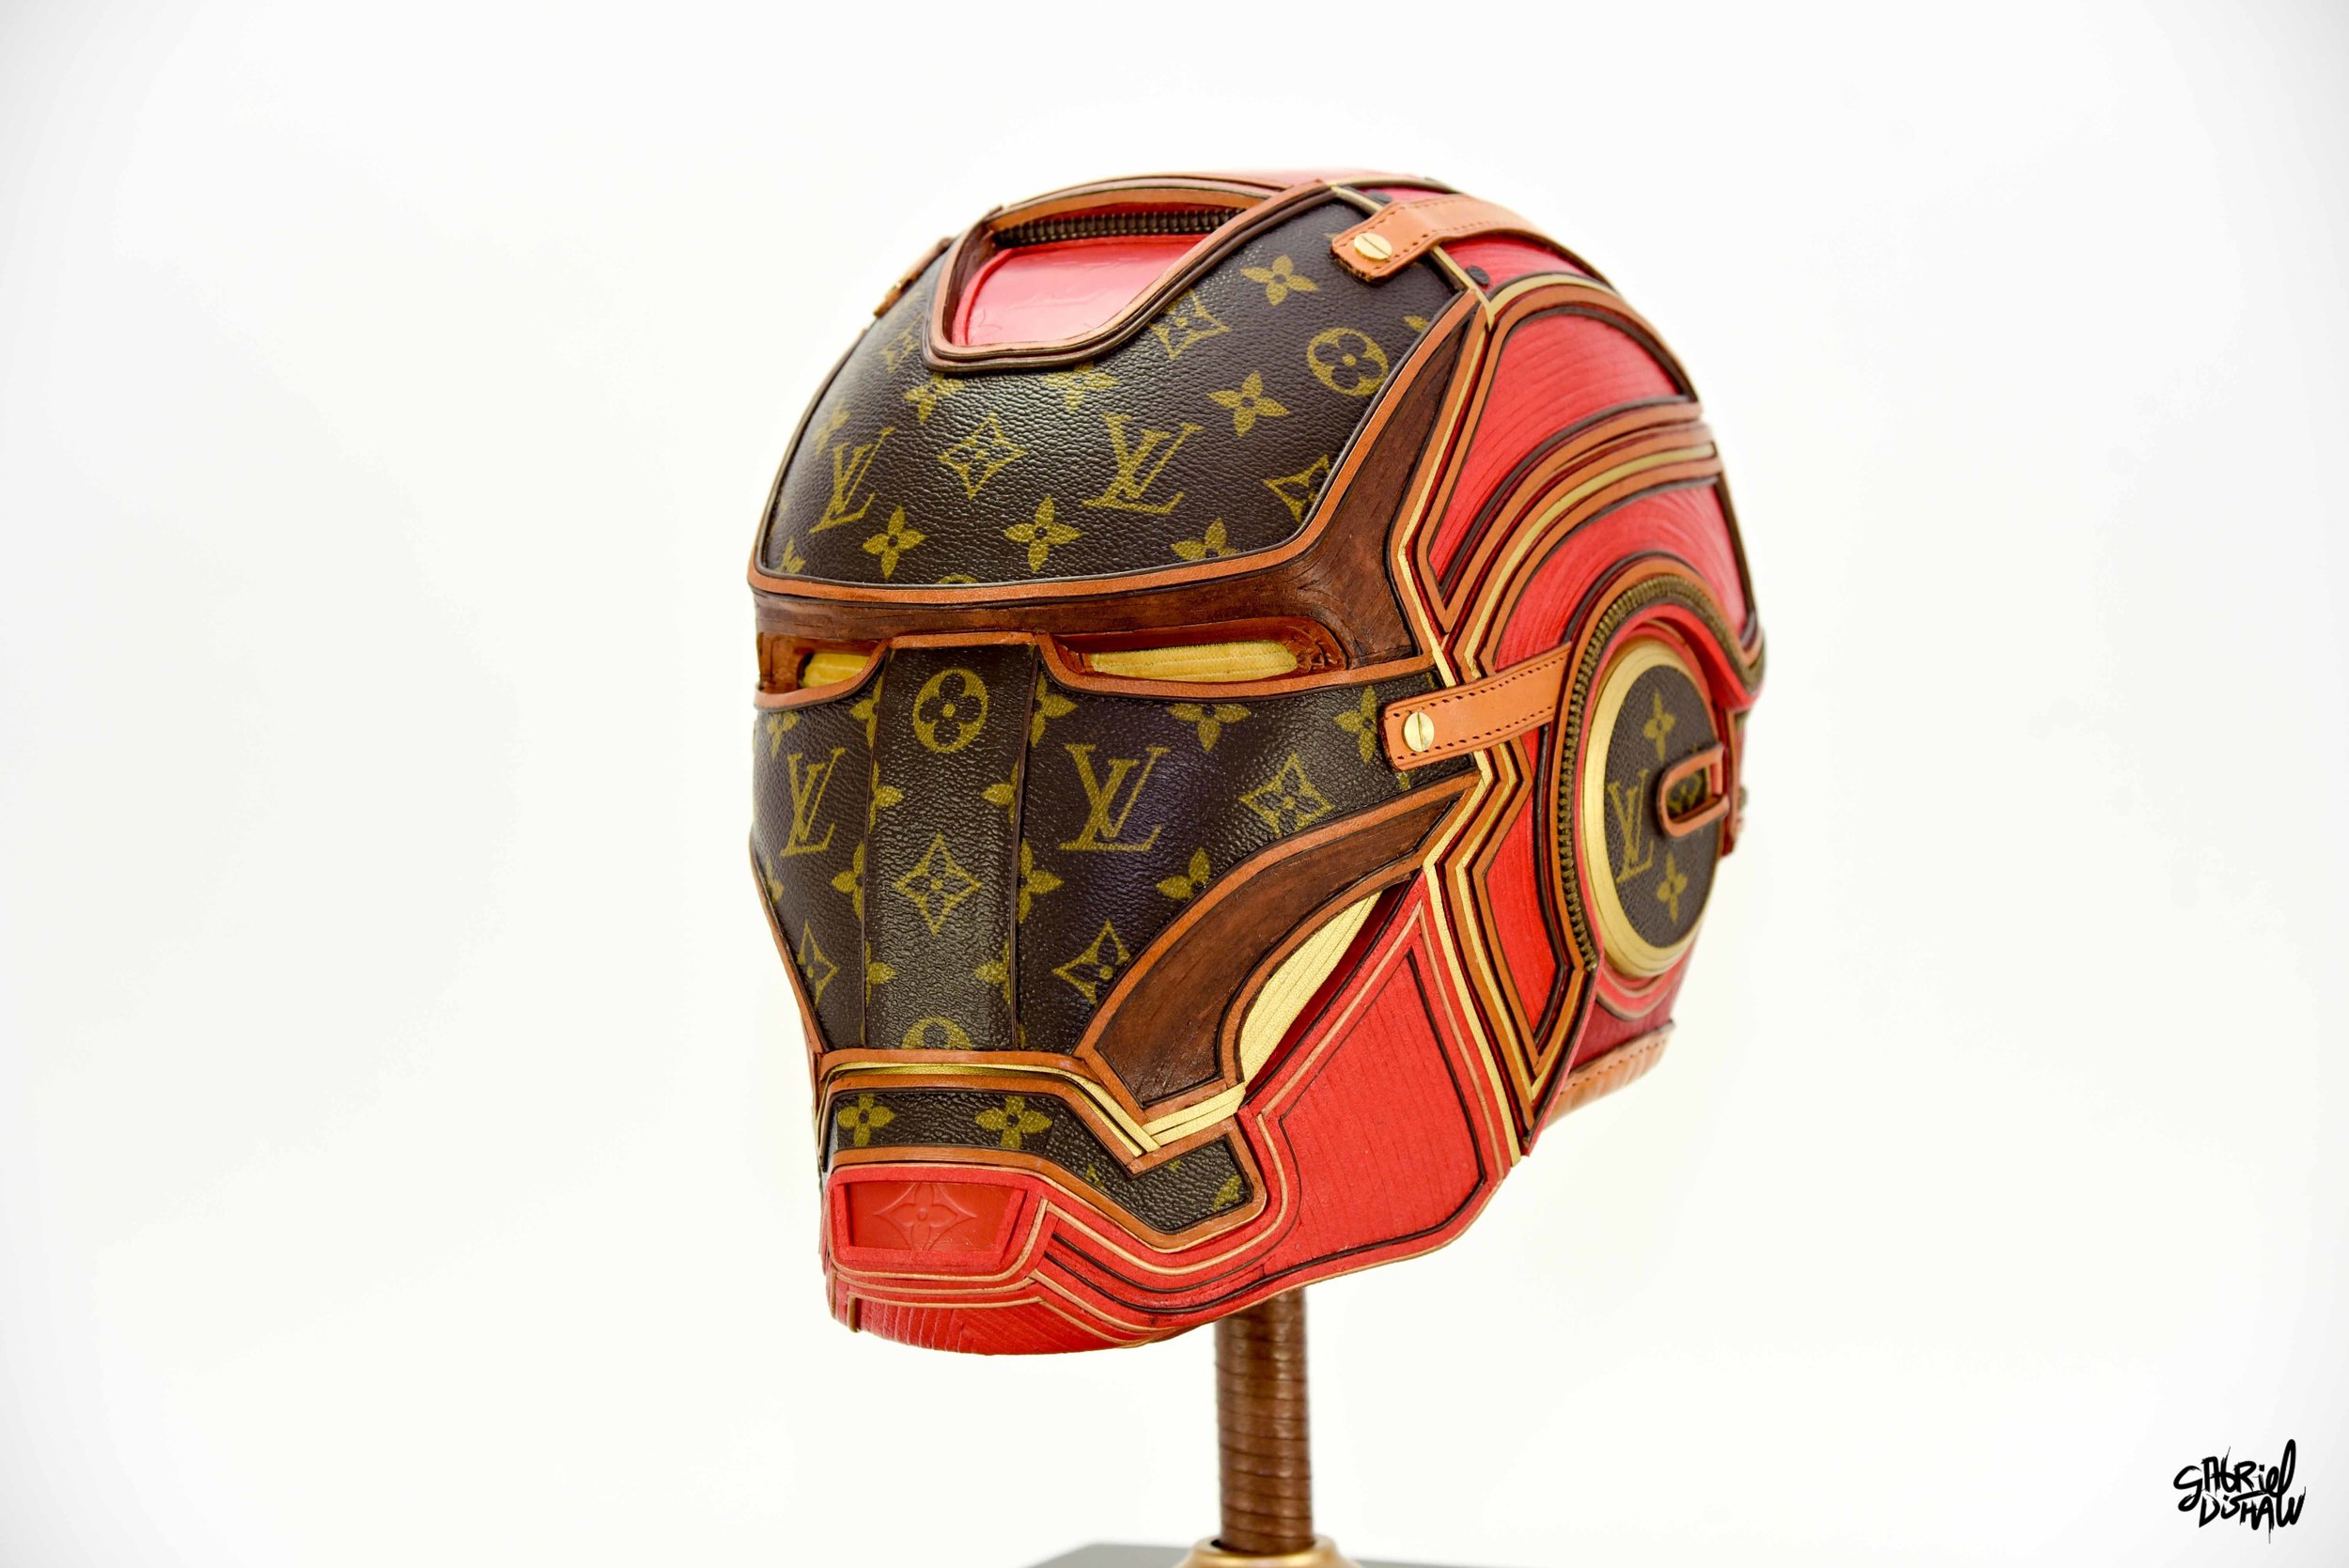 Iron Man x Louis Vuitton